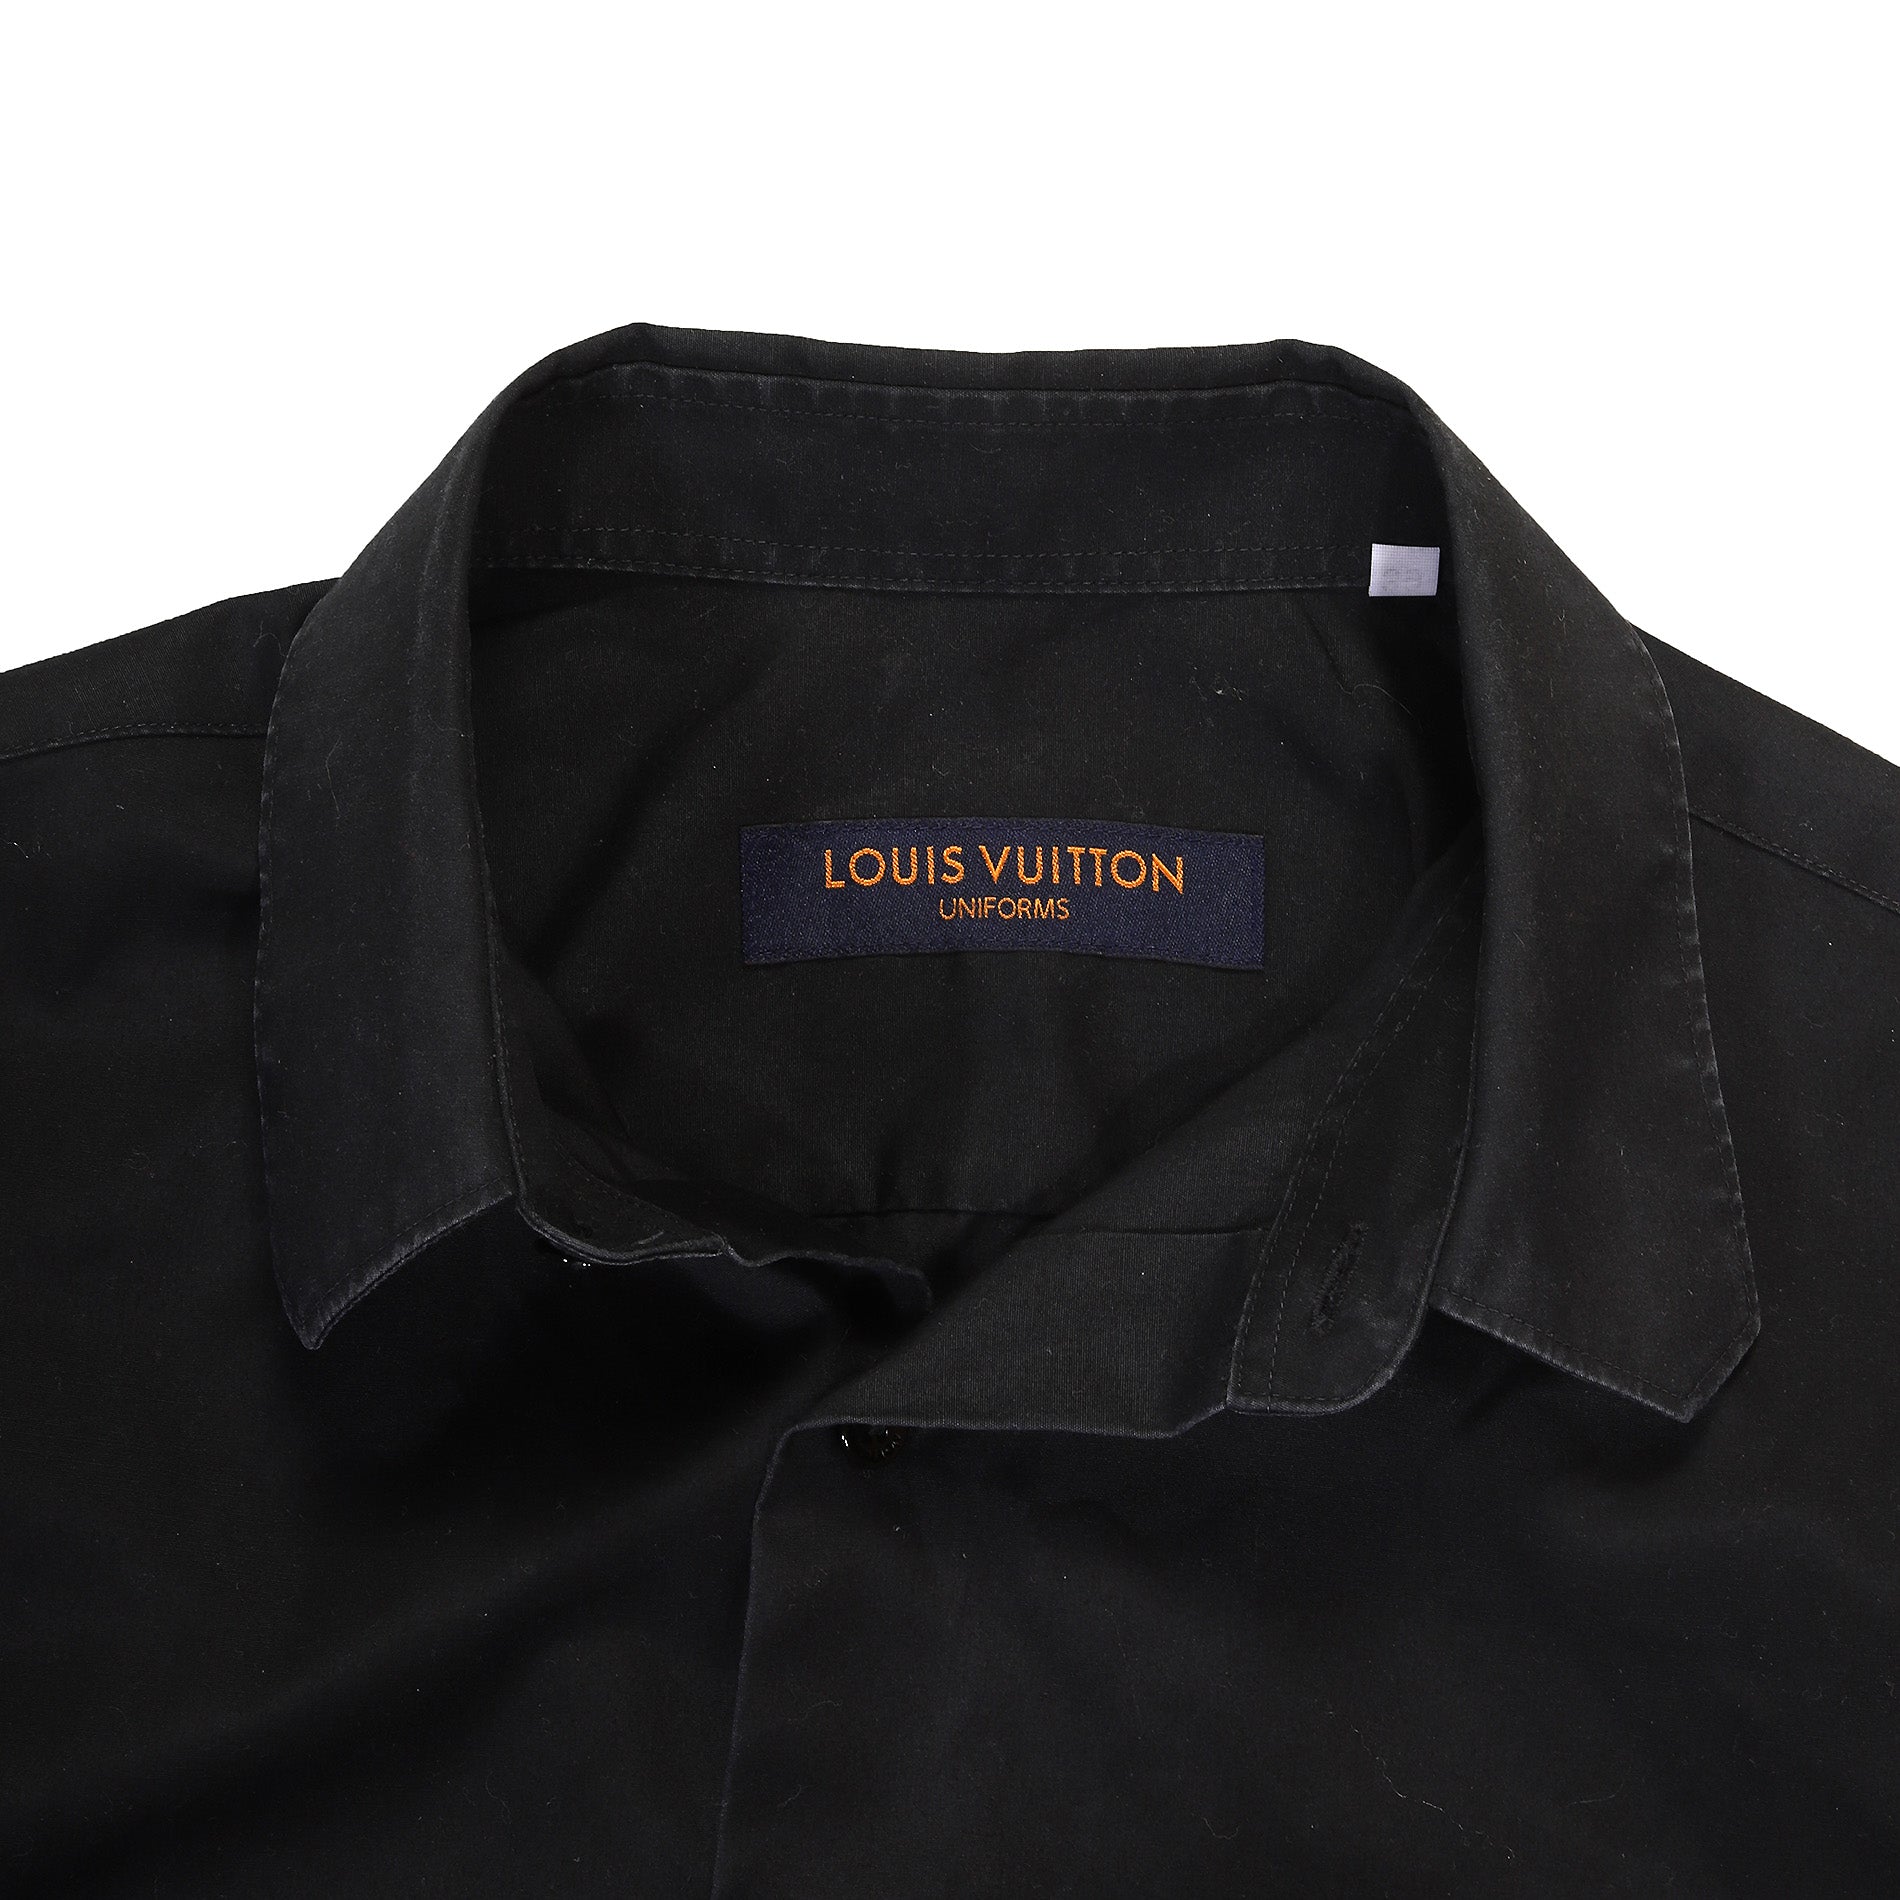 Louis Vuitton, Tops, Louis Vuitton Uniform Shirt Black